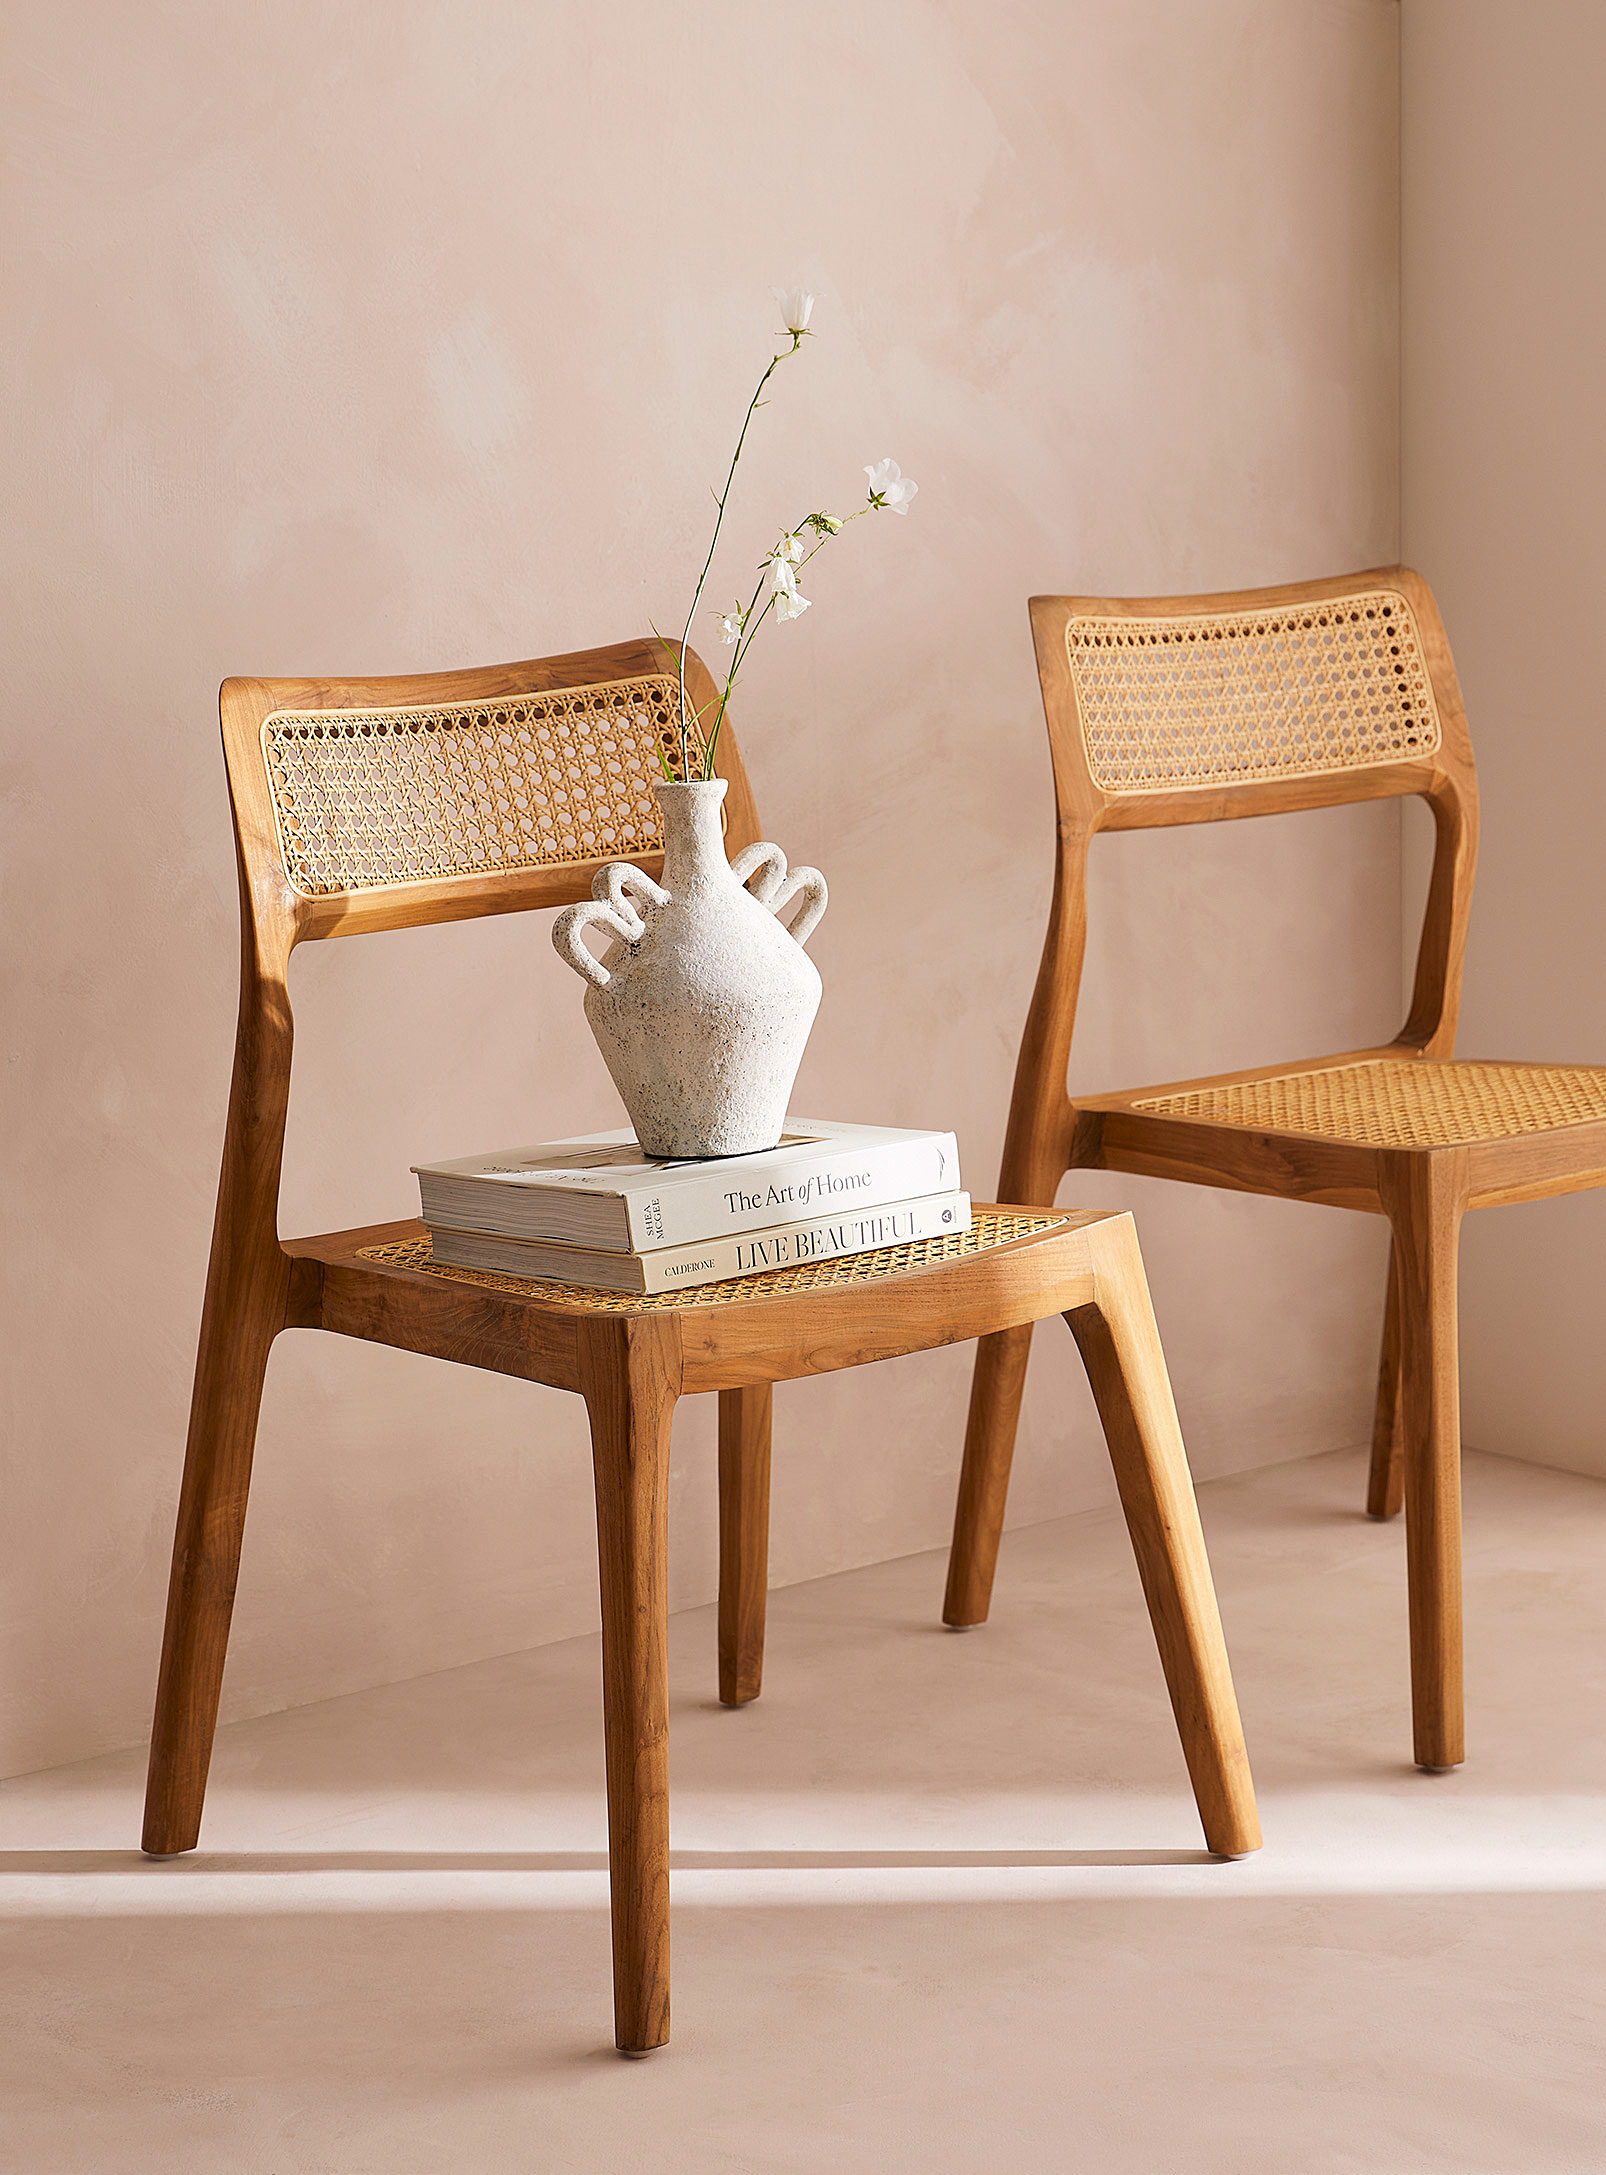 CRUSOË - Teak wood and rattan chair